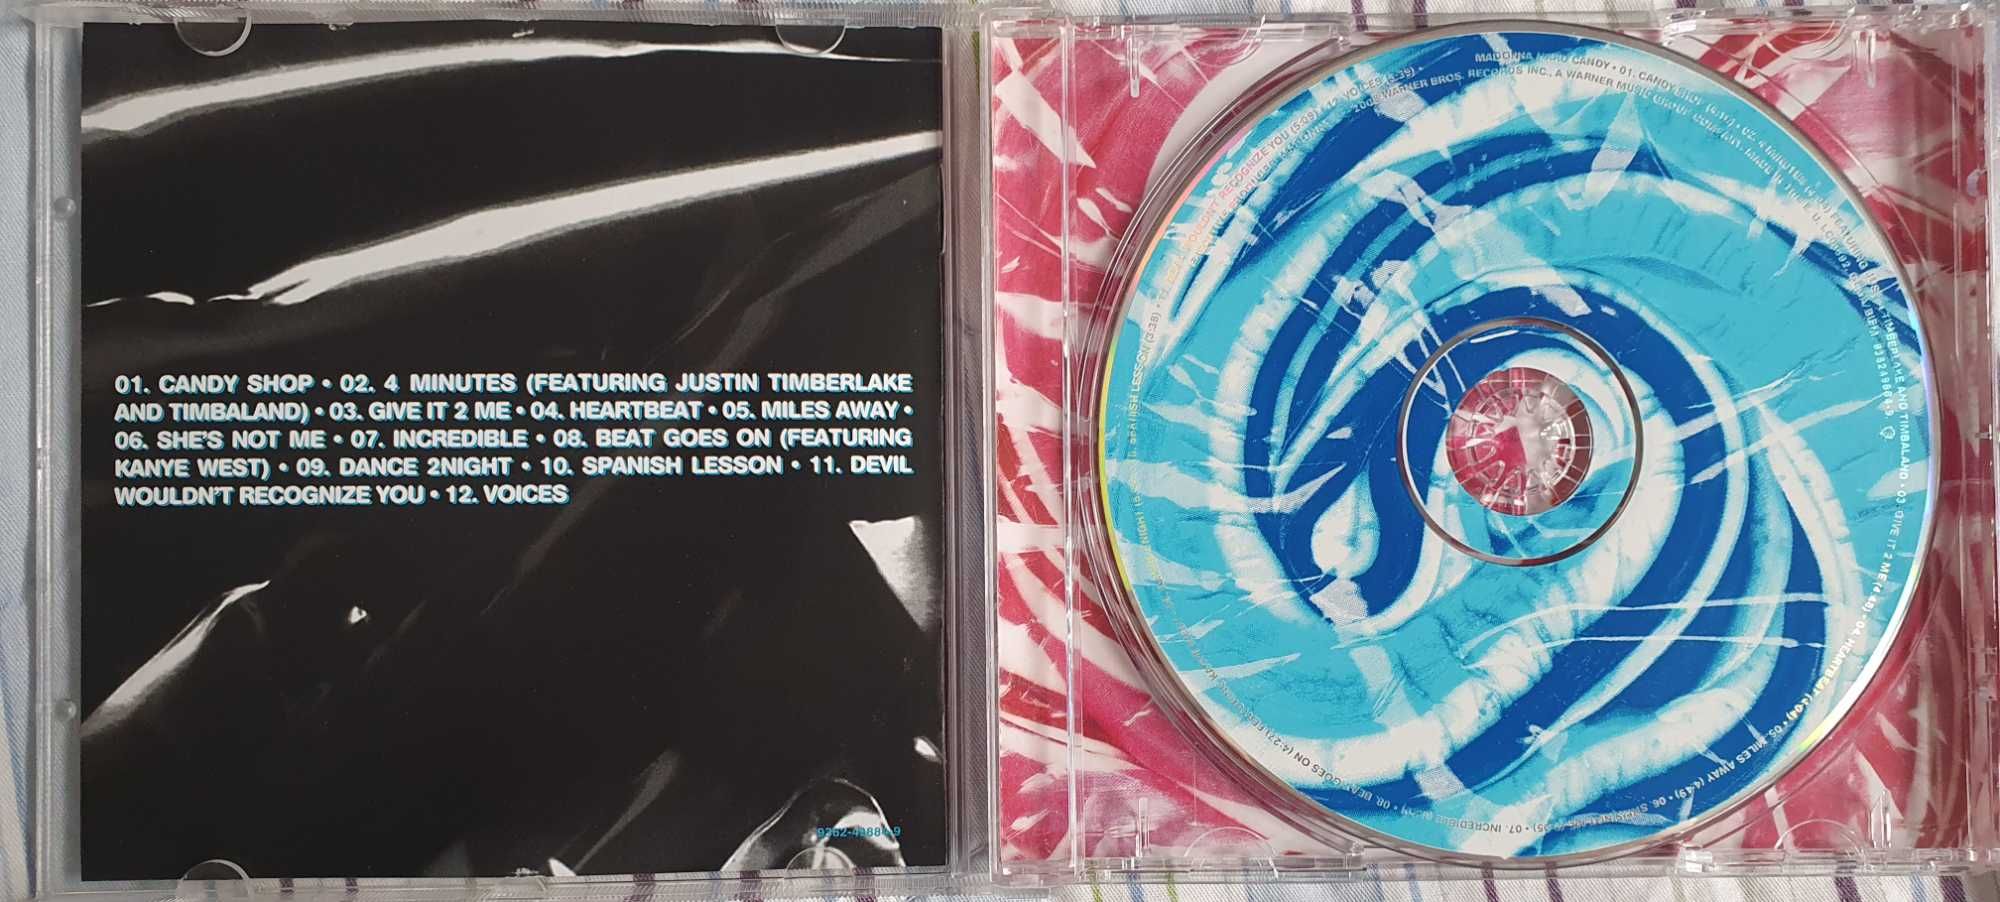 Madonna - Hard Candy (CD)